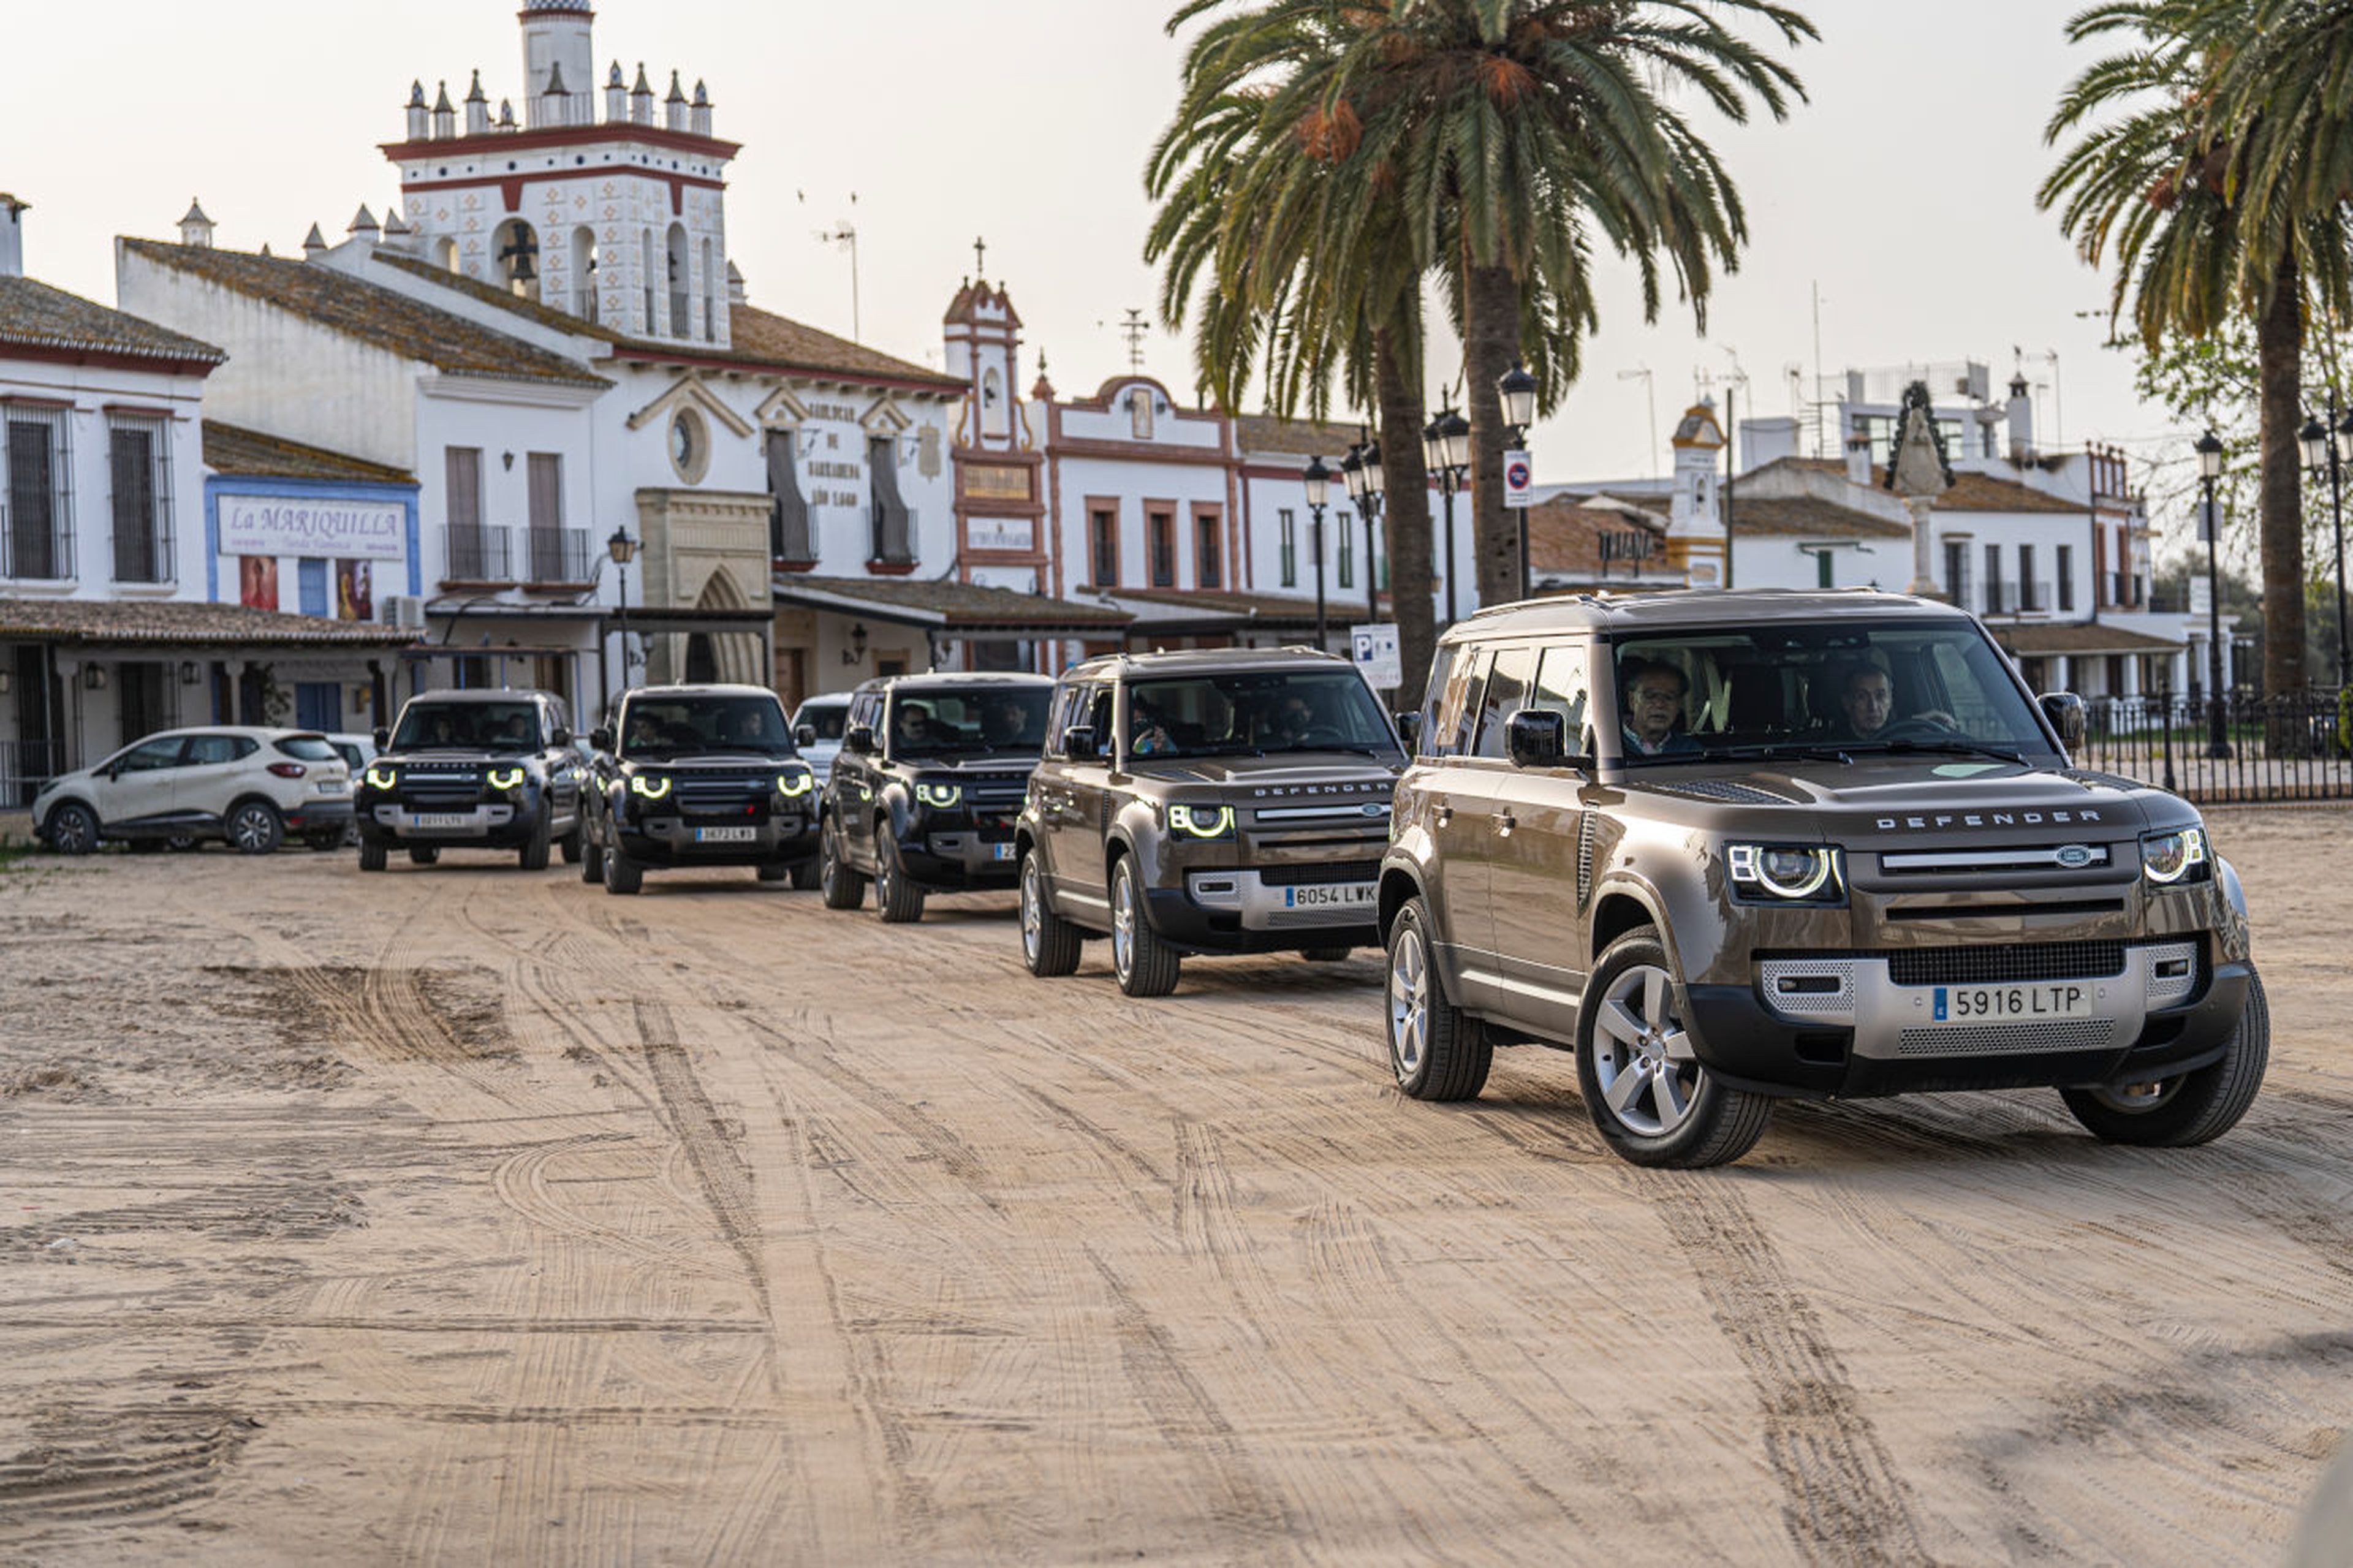 El convoy de Land Rover Defender en El Rocío (Huelva).